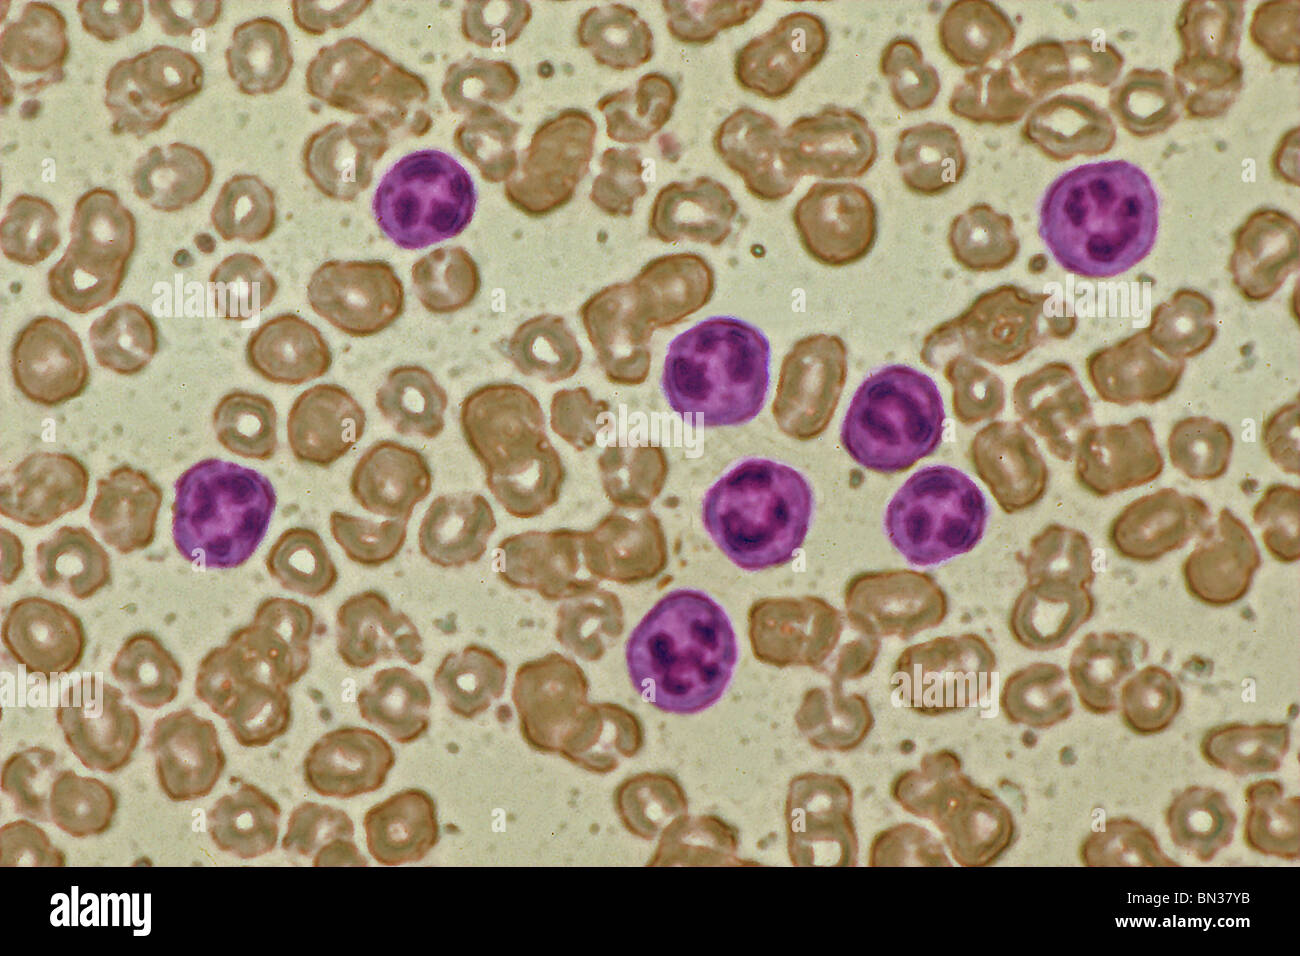 Micrographie de la lumière des cellules sanguines normales Banque D'Images